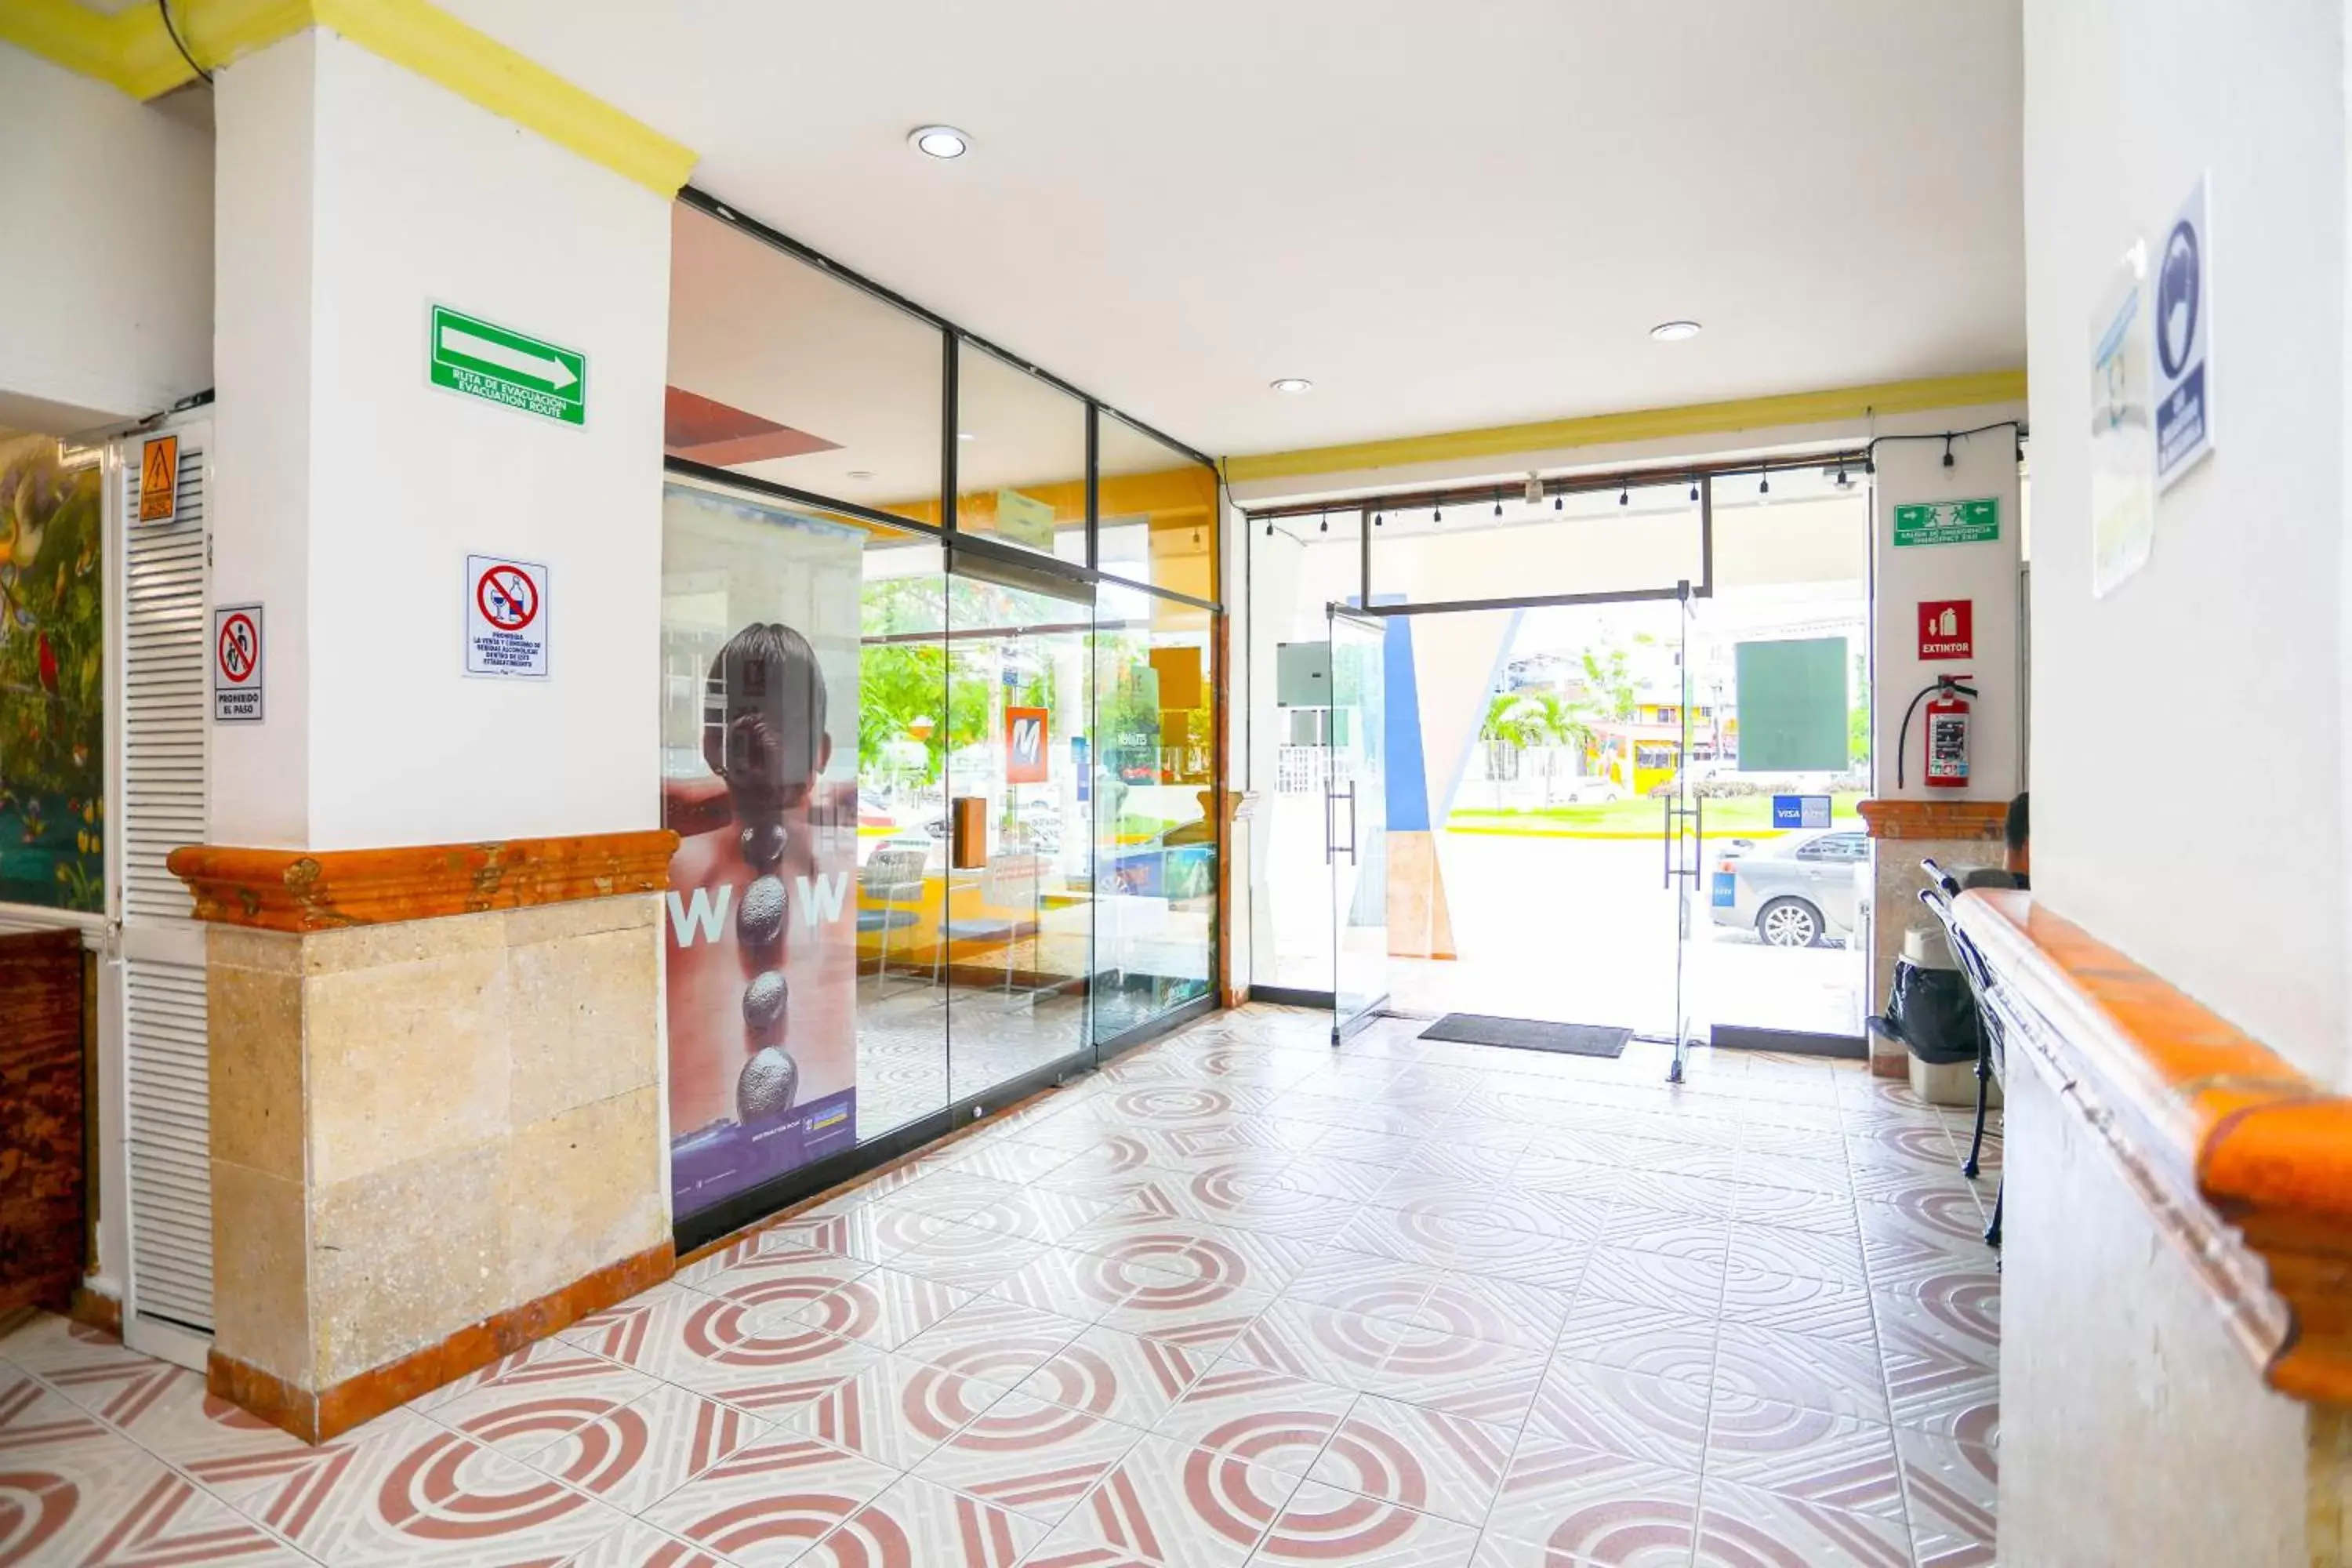 Lobby or reception, Lobby/Reception in Hotel Caribe Internacional Cancun